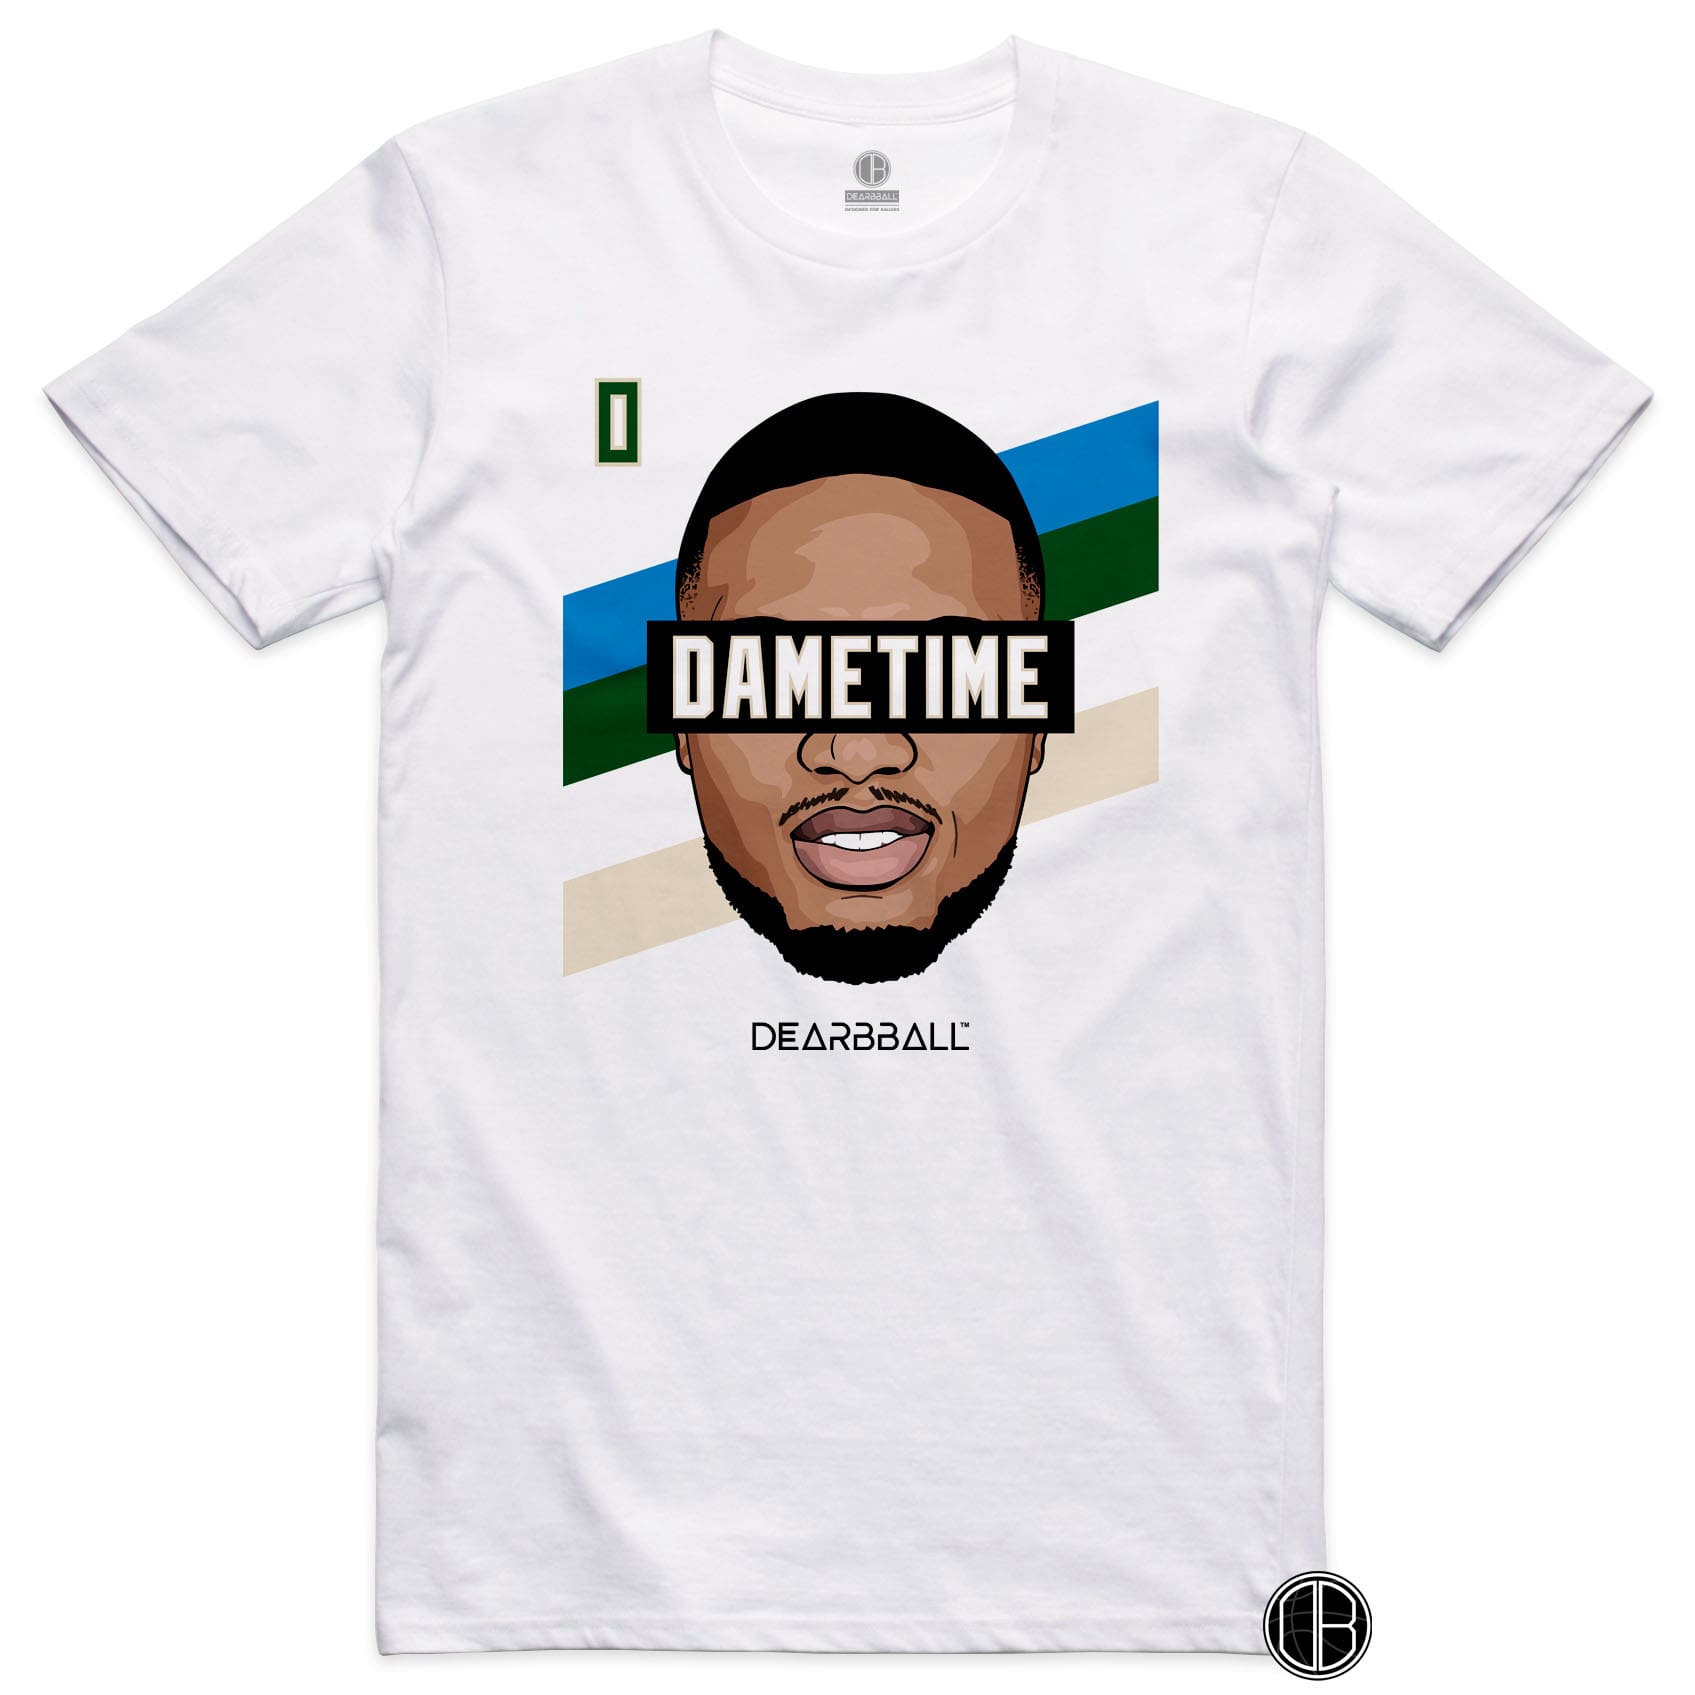 [BAMBINO] Maglietta DearBBall - DameTime Stripes 0 Edition